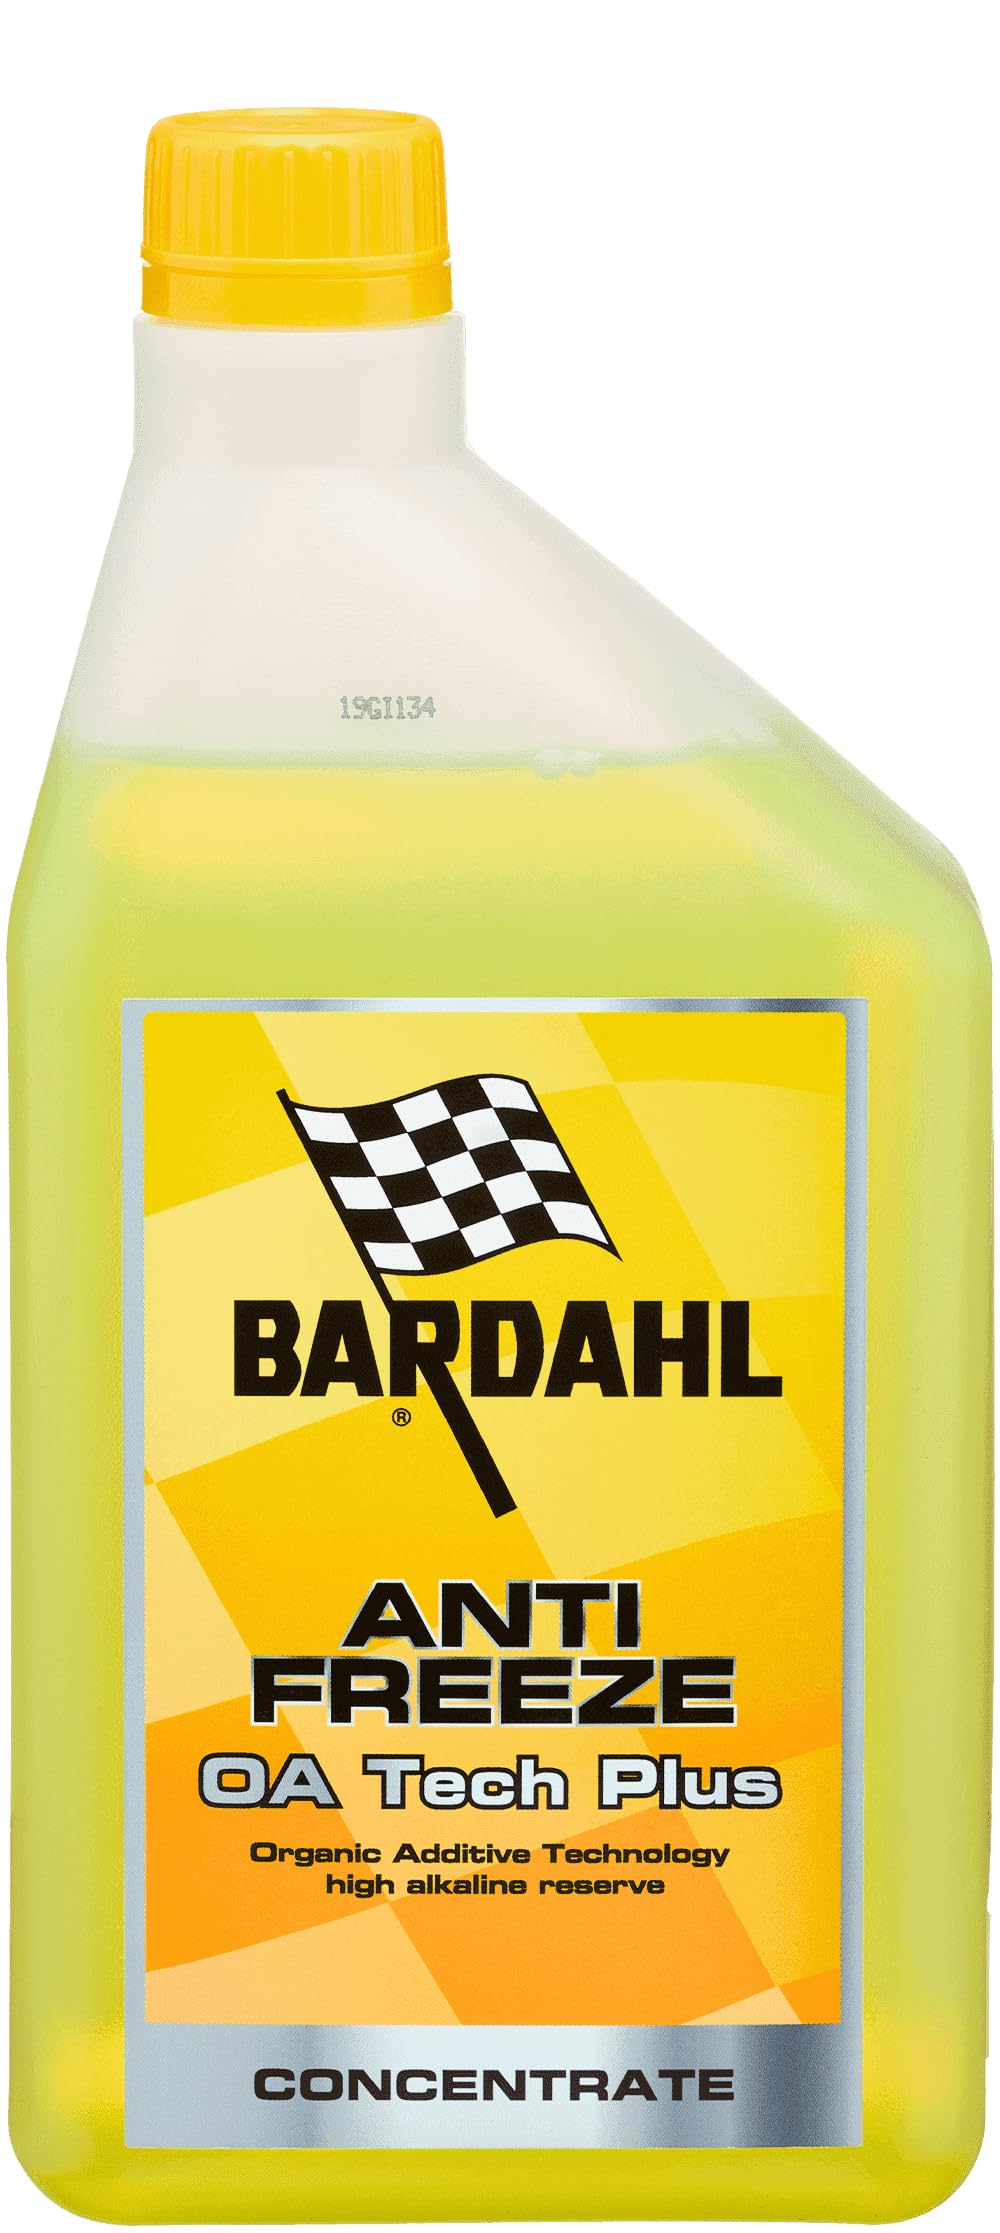 Bardahl - Antifreeze OA Tech Plus Konzentrat, flüssiges Kühlmittel gegen Frost, Kühlflüssigkeit für Auto, Motorrad und Nutzfahrzeuge mit Oat-Flüssigkeiten, -37 °C bis +108 °C, 1 Liter von Bardahl